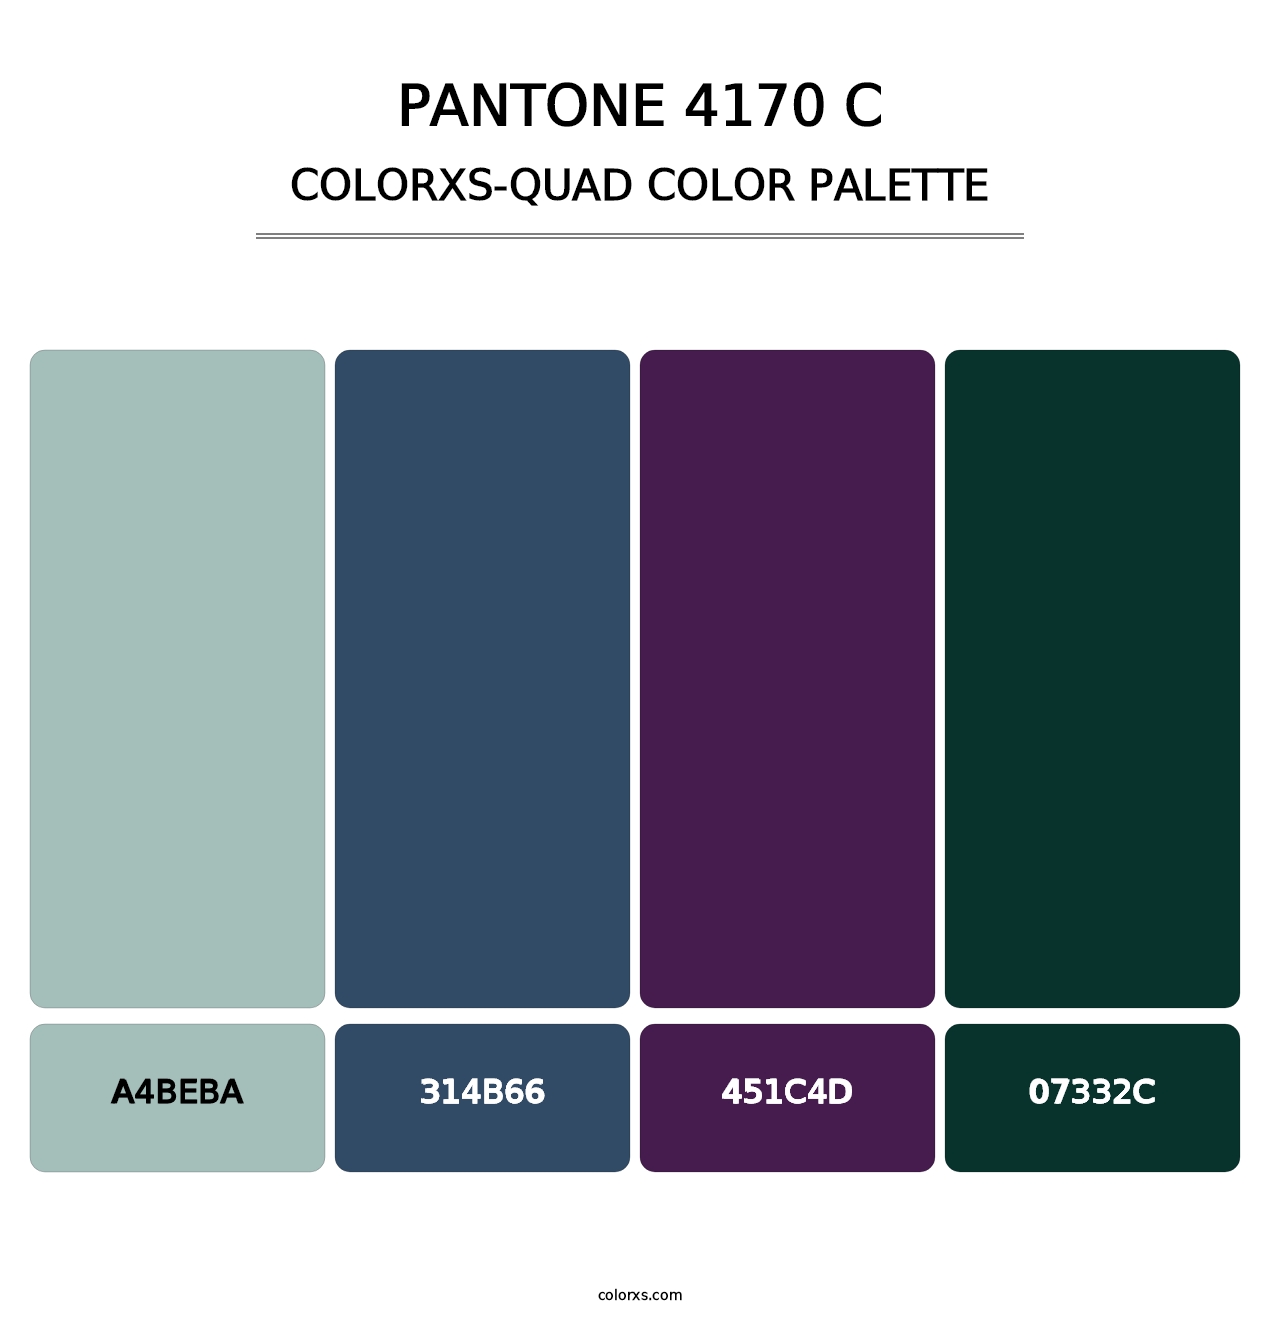 PANTONE 4170 C - Colorxs Quad Palette